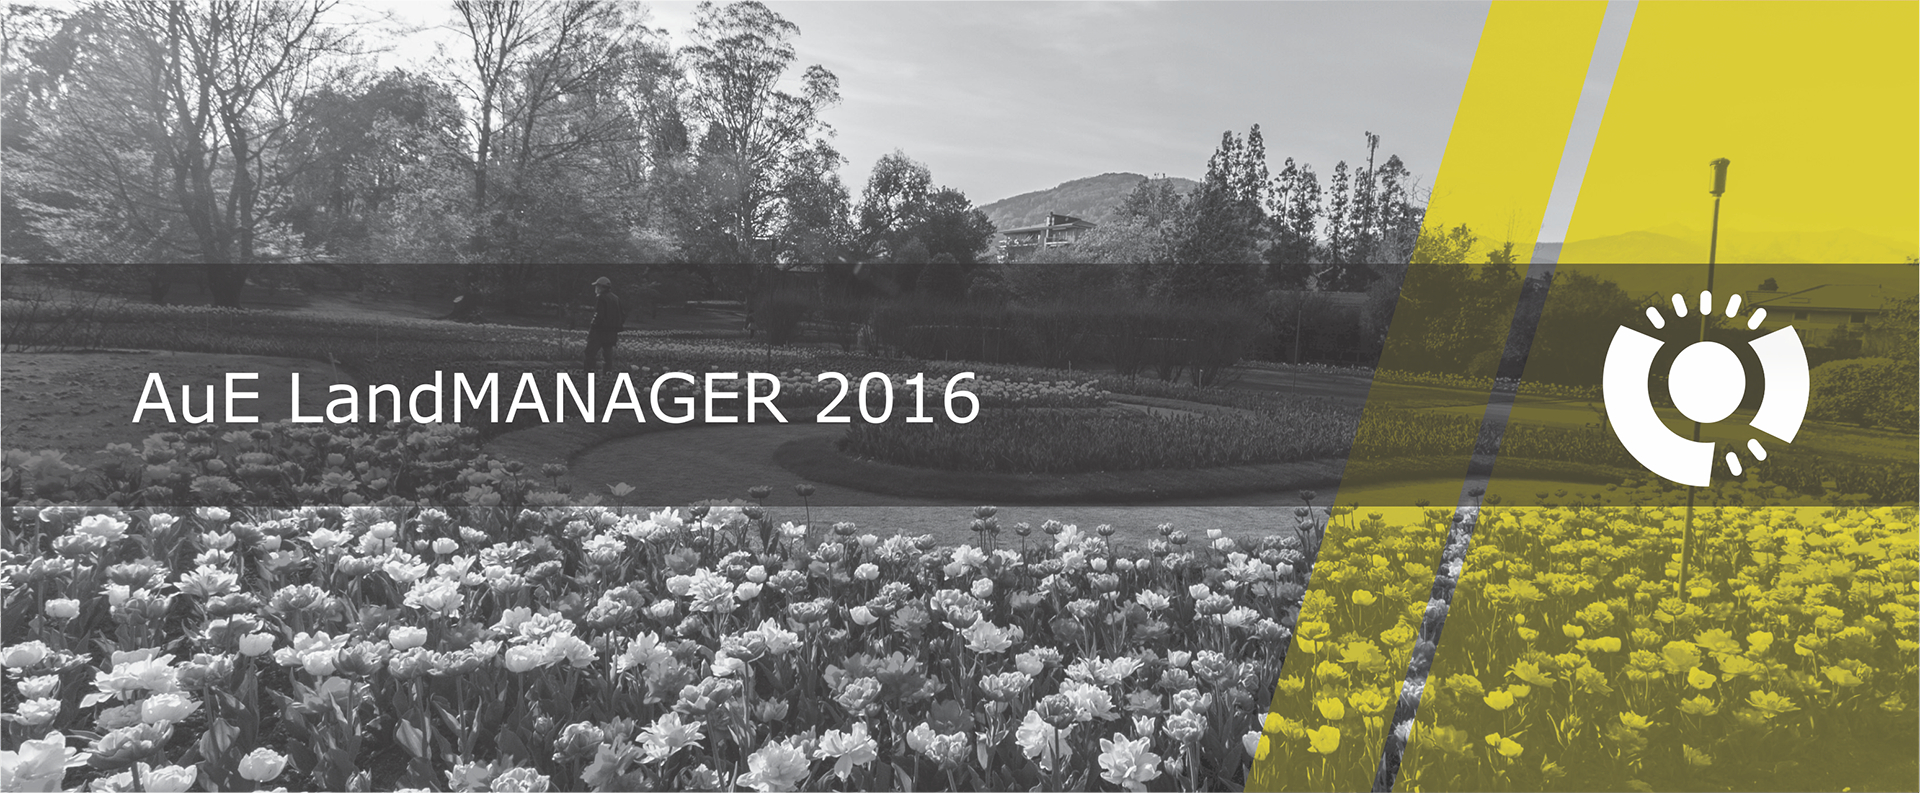 LandMANAGER 2016: Registro de proyectos